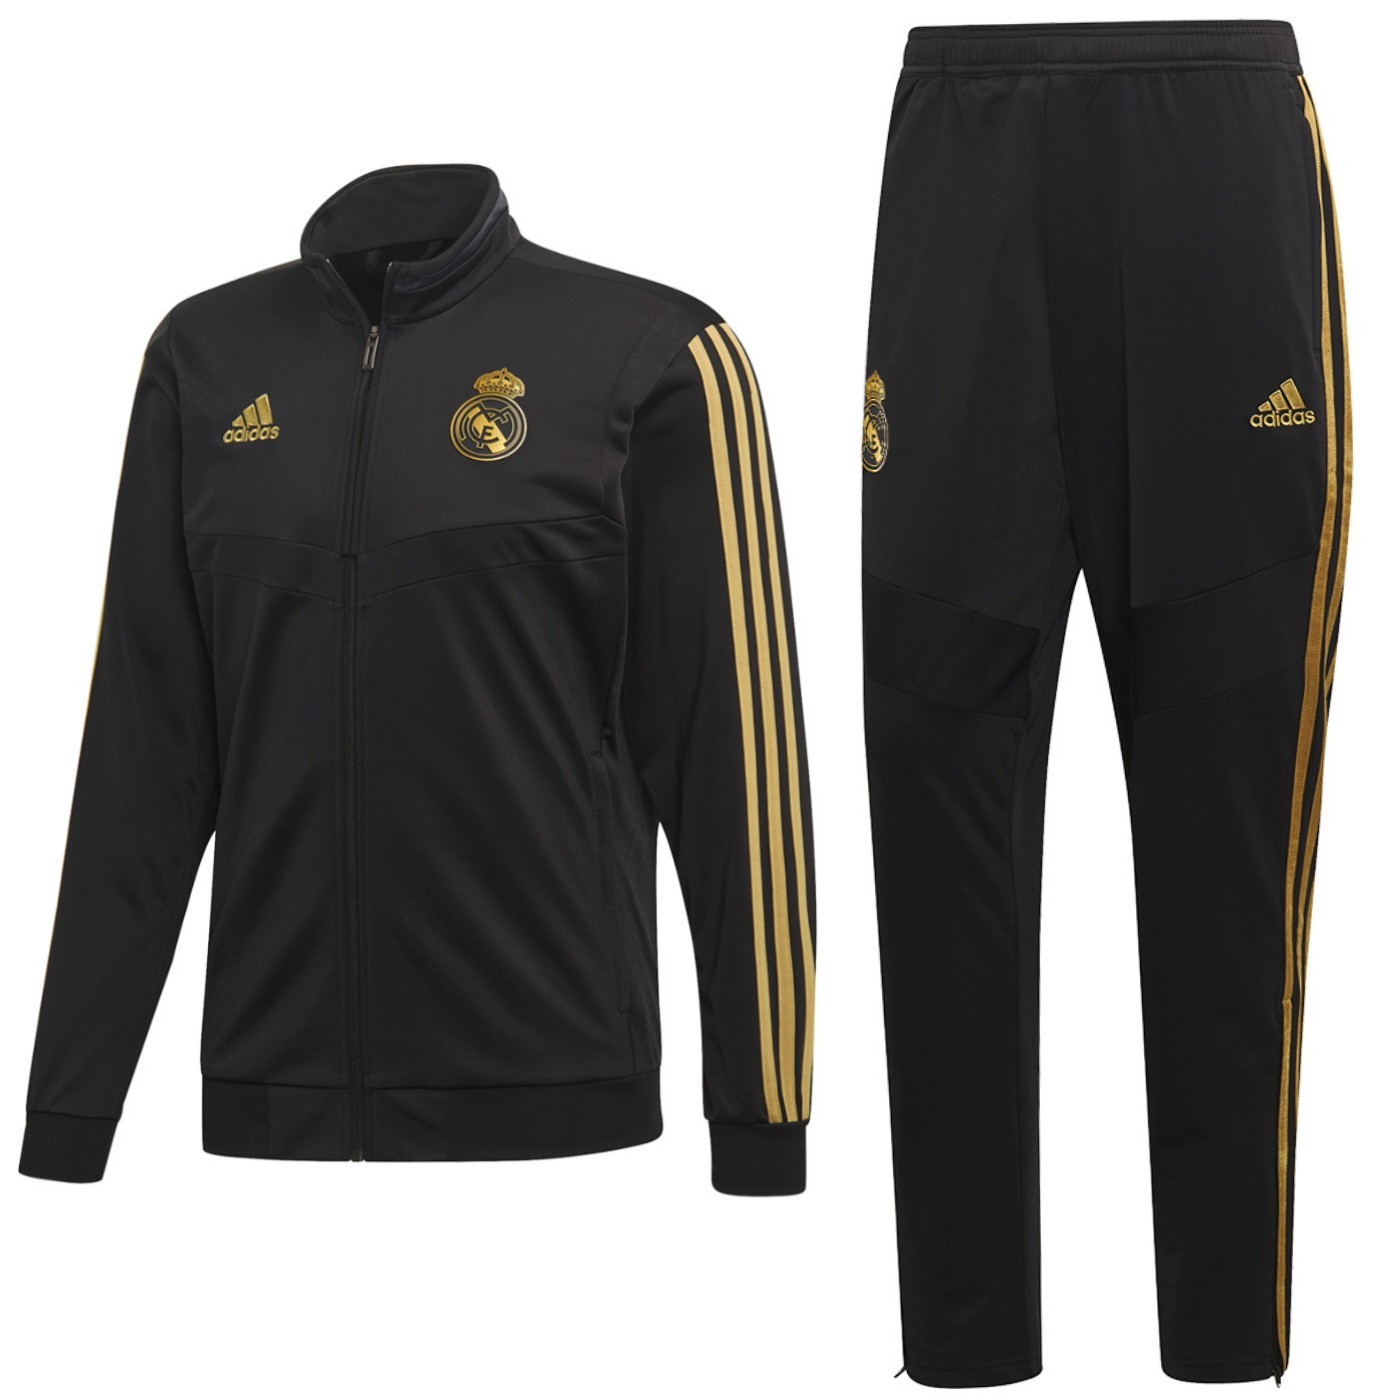 Tuta nera da rappresentanza/allenamento Real Madrid 2019/20 - Adidas -  SportingPlus.net